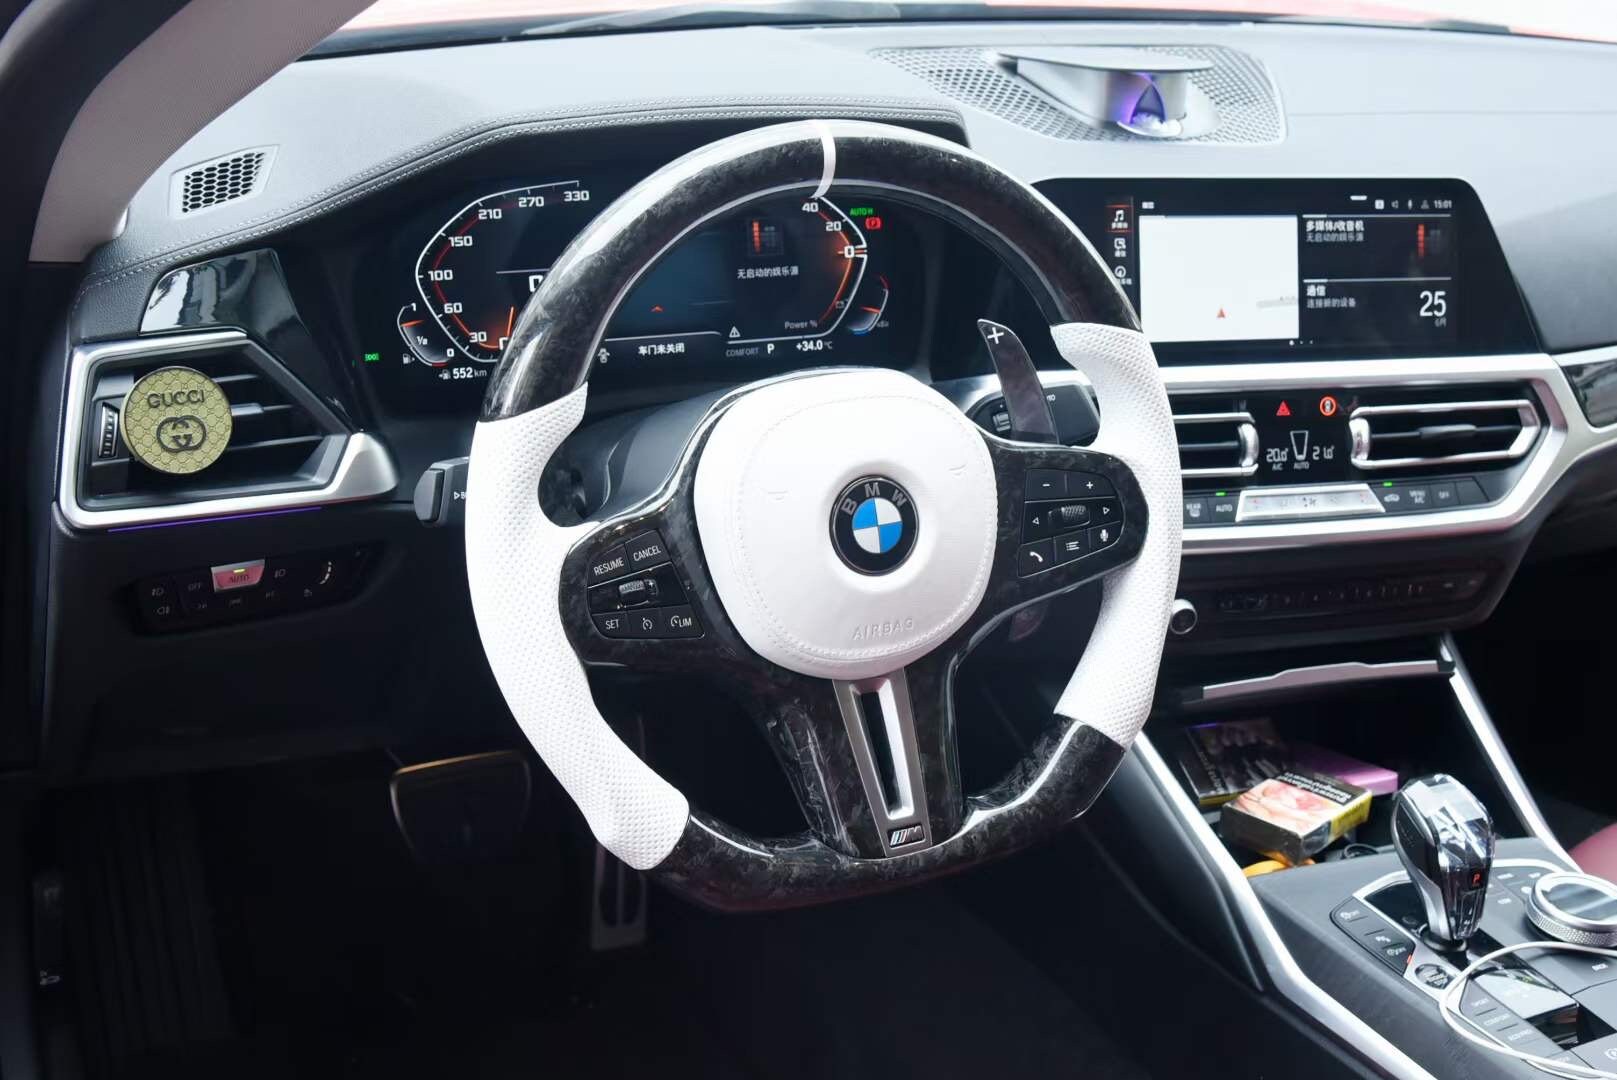 Bmw x5 m steering wheel - .de